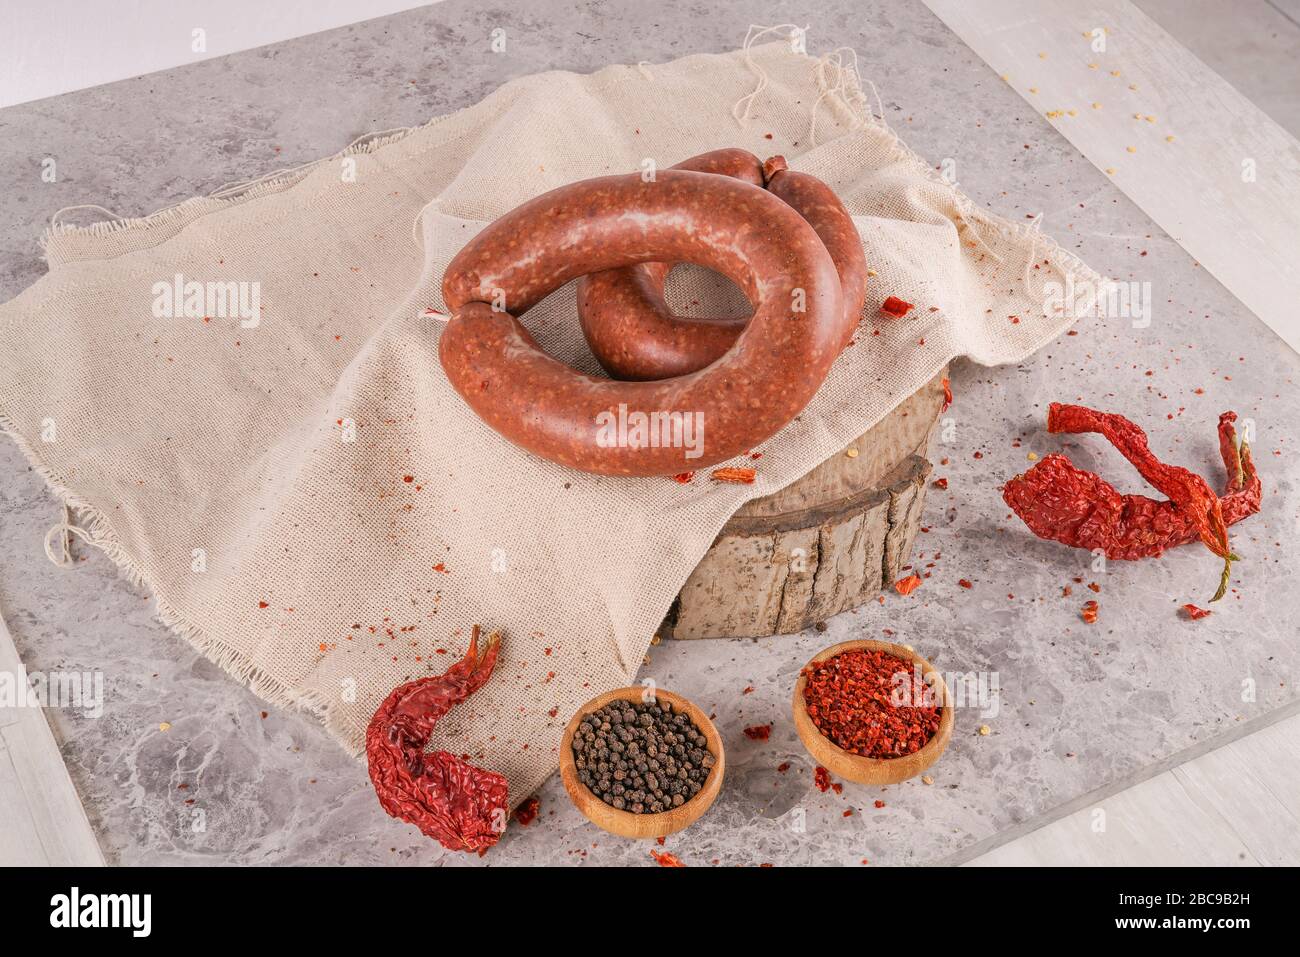 Turkish sausage (sucuk) Stock Photo